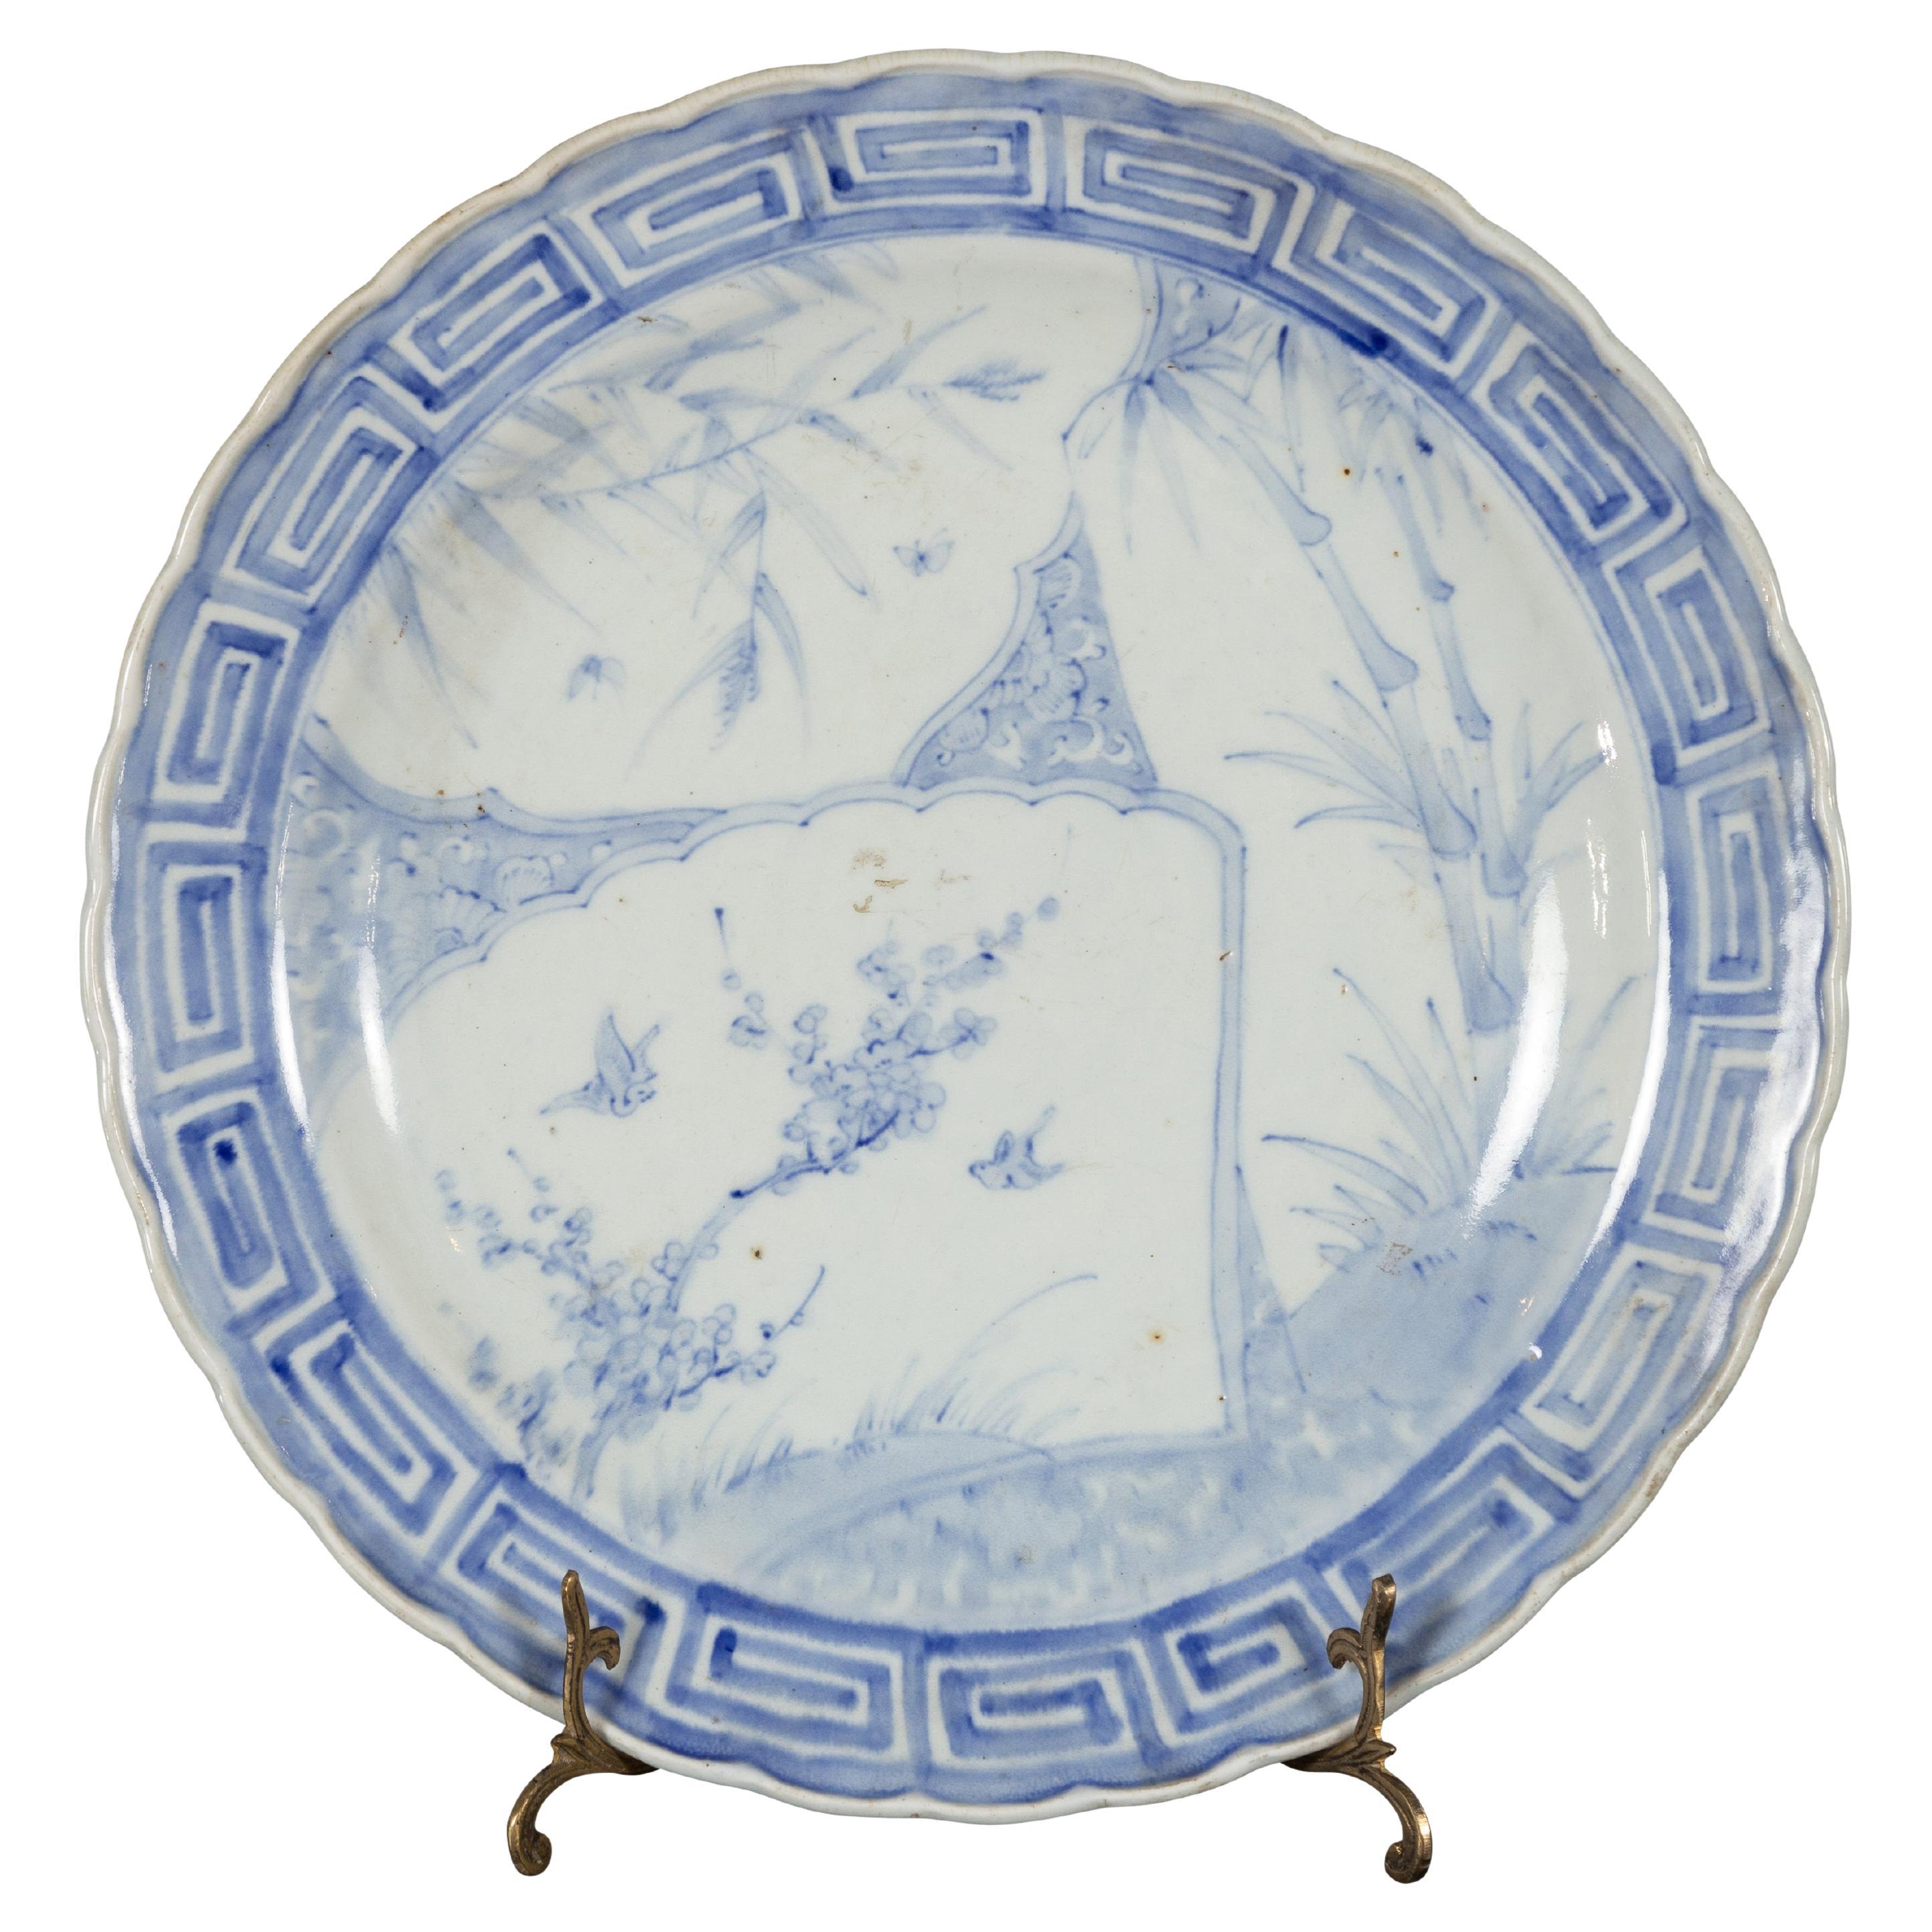 Assiette en porcelaine japonaise du 19ème siècle avec motifs d'oiseaux bleus et blancs et de bambou